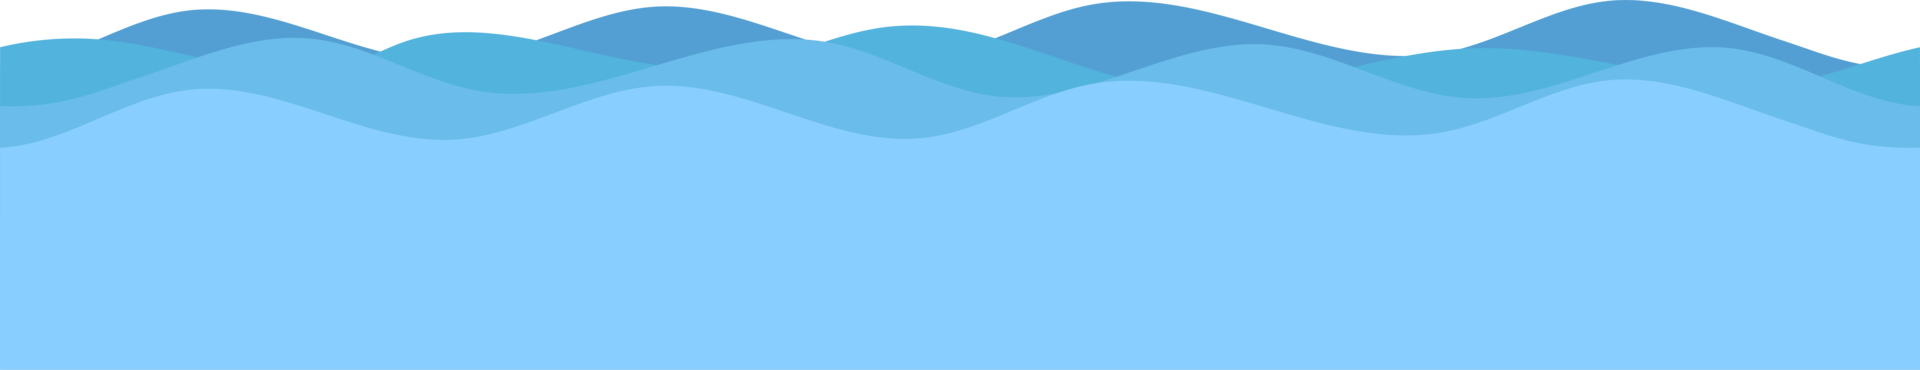 Ocean PNG Cutout